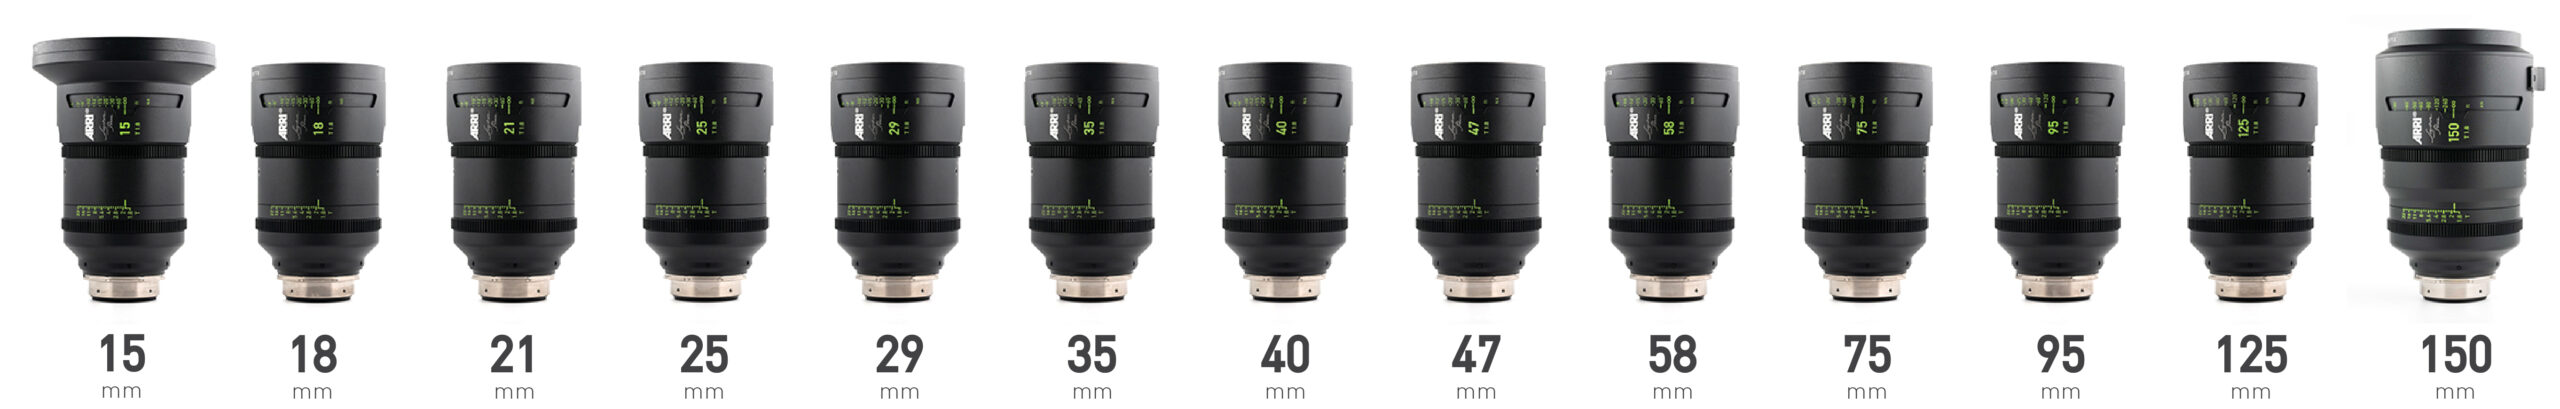 ARRI Signature Prime Lenses Line Up